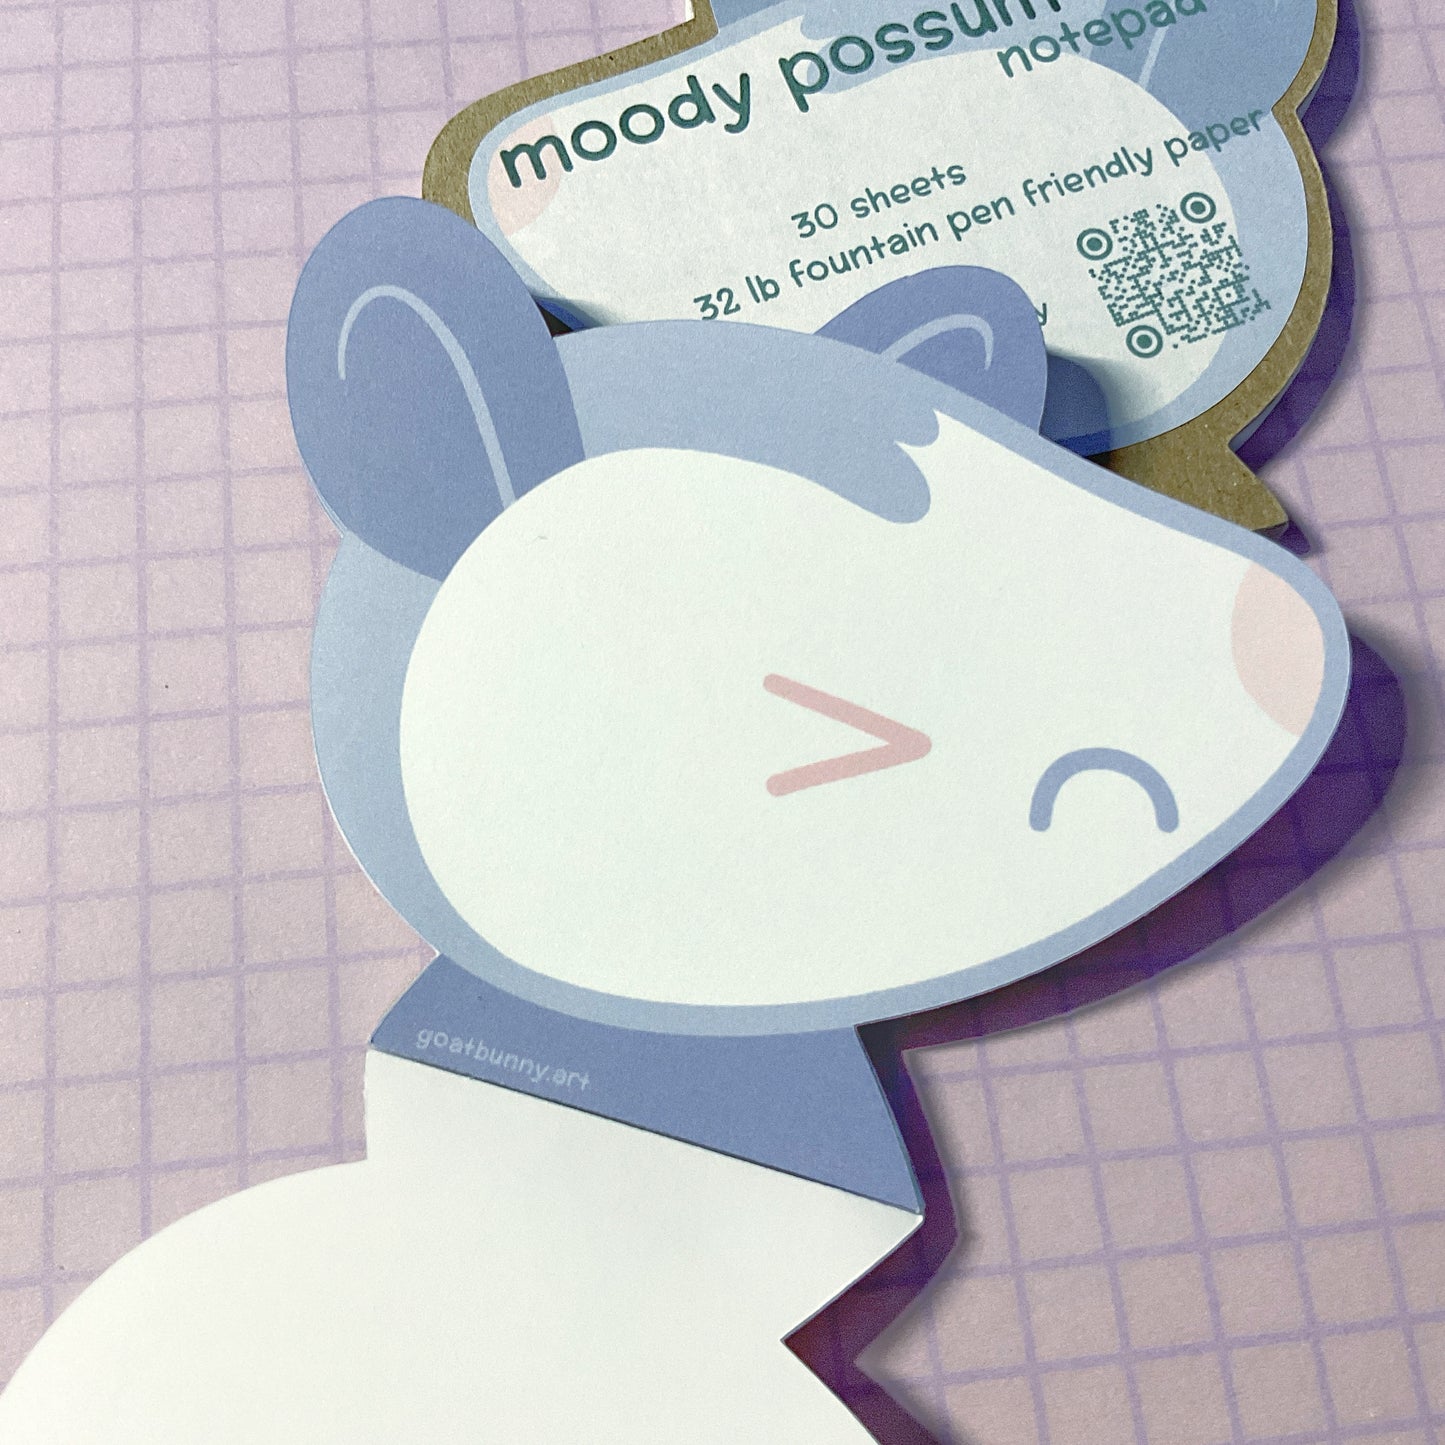 Moody Possum notepad